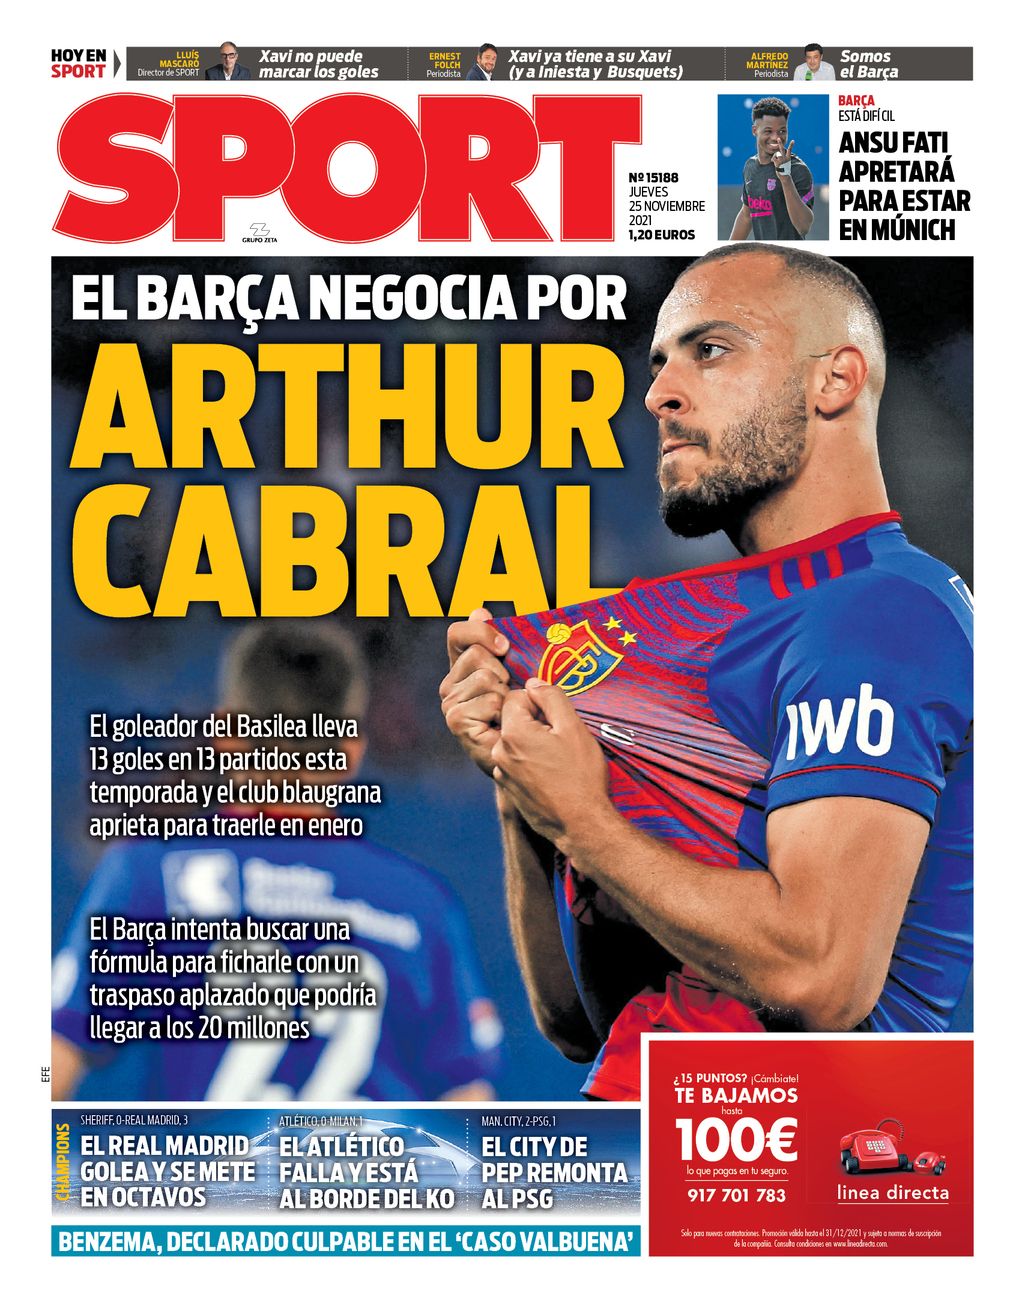 El Barça negocia por Arthur Cabral